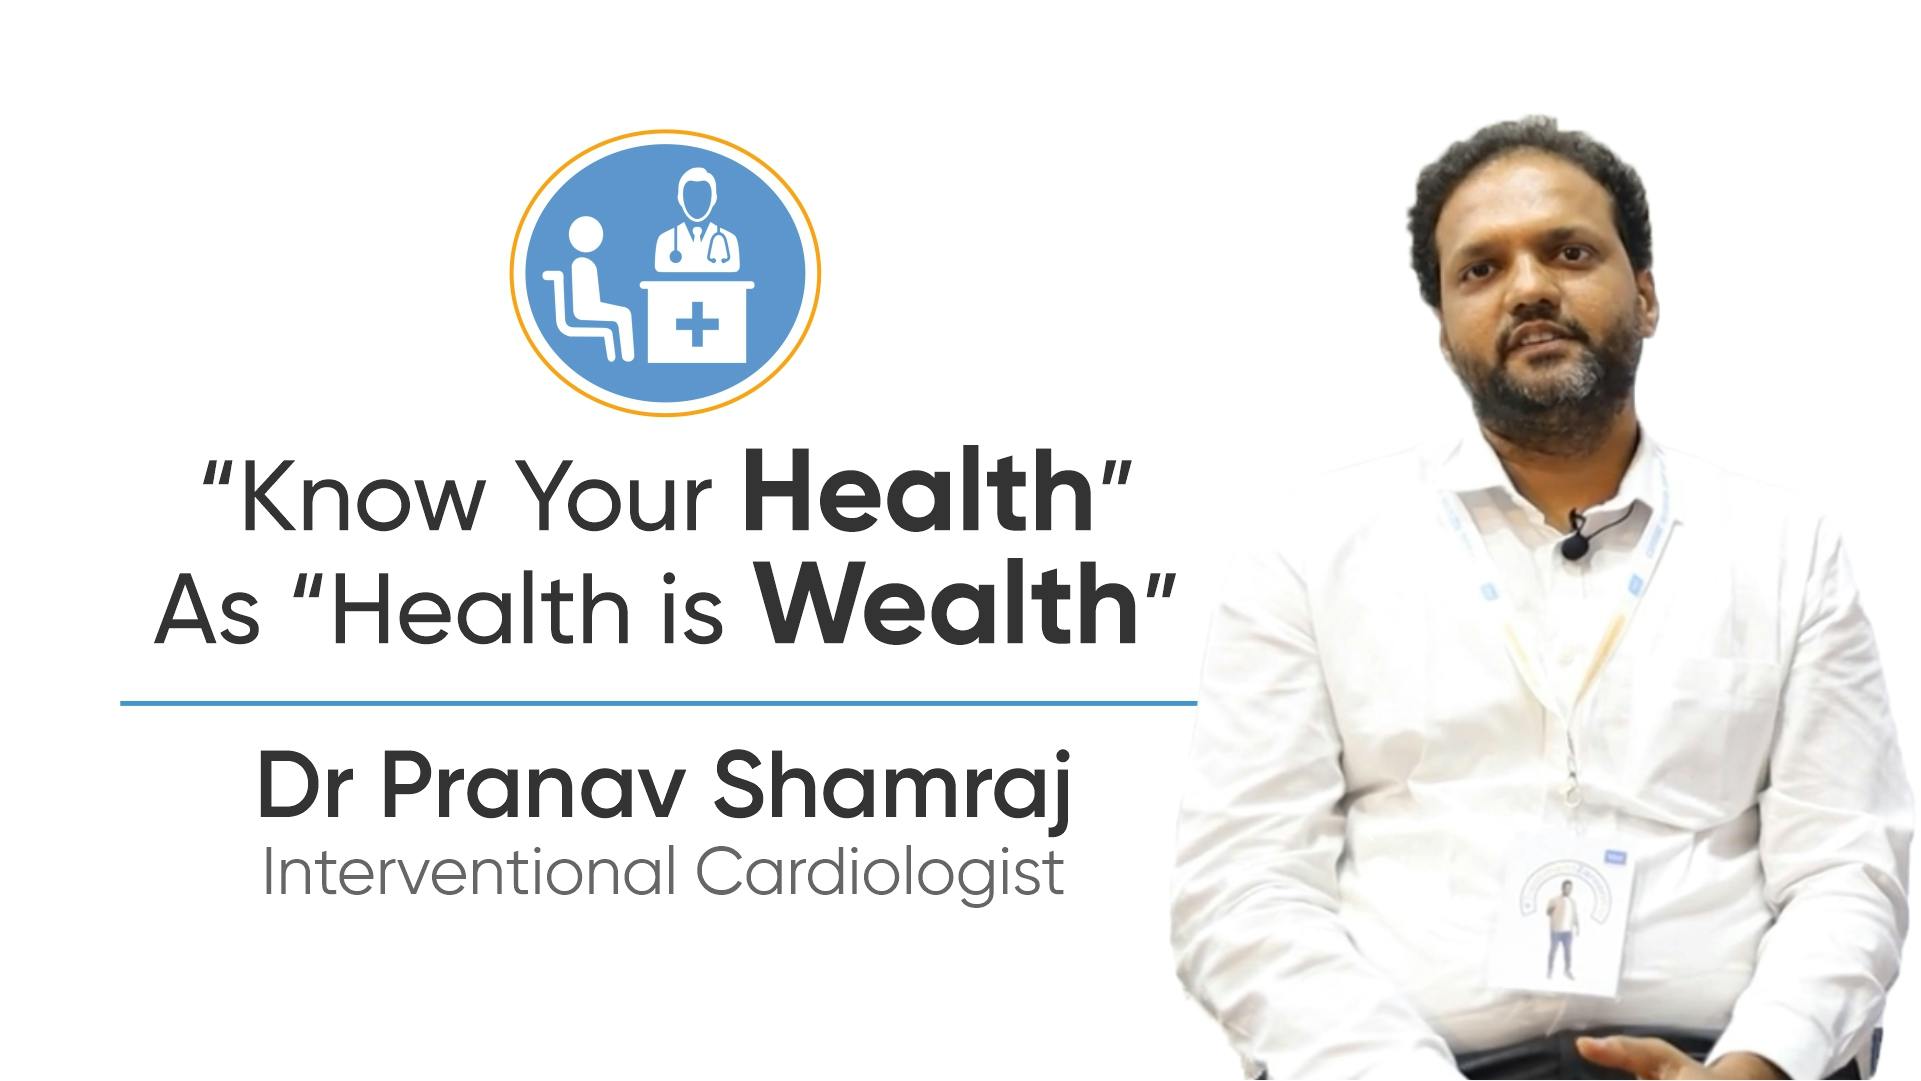 Dr. Pranav Shamraj